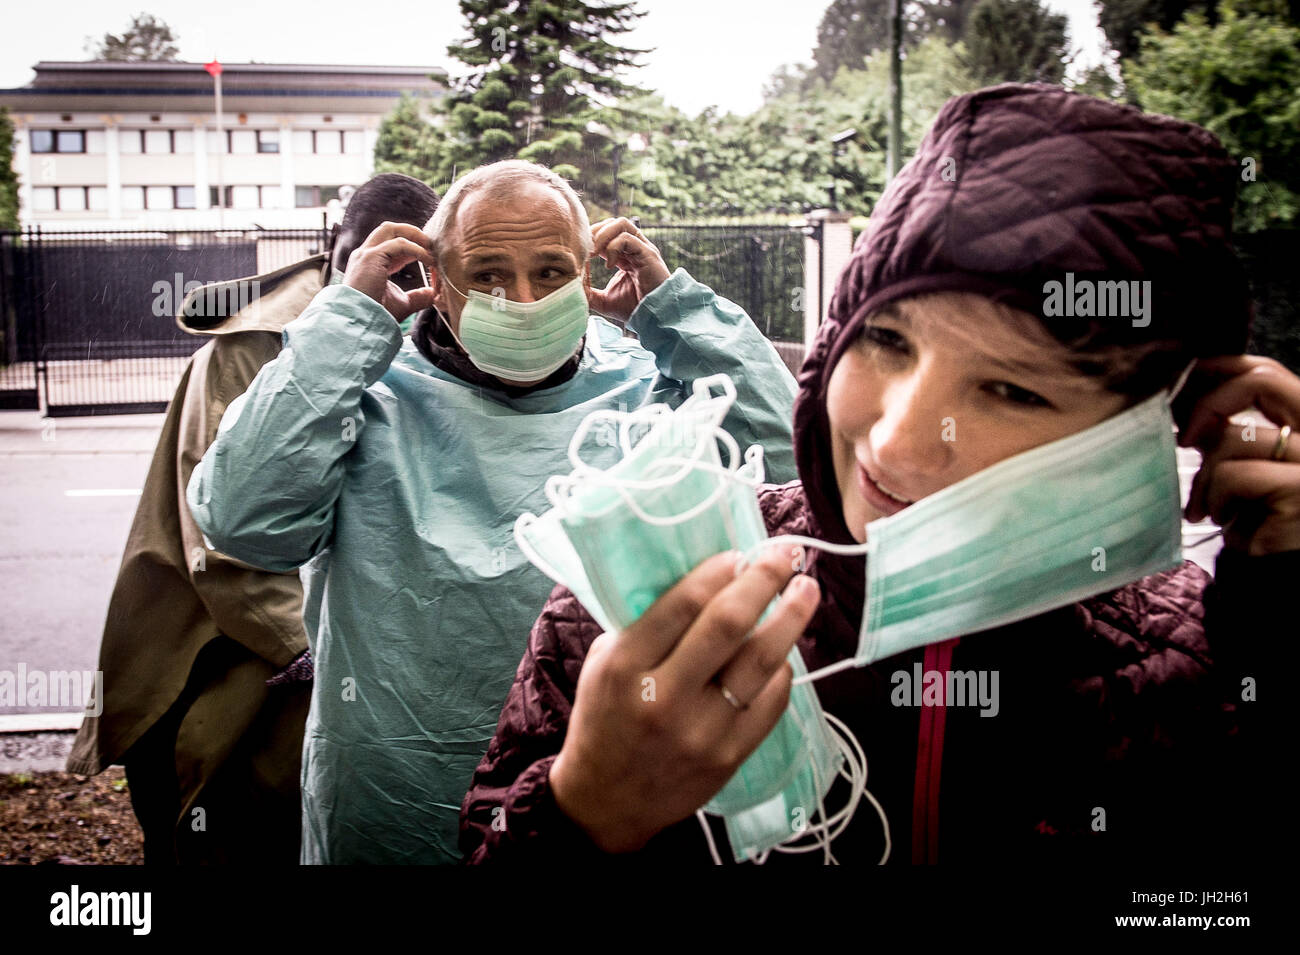 Menschenrechtsaktivisten festhalten 12.07.2017 Demonstranten uns als Ärzte, die Pflege verkleiden gegeben zu Menschenrechte und Menschenrechtsverteidiger in China symbolisieren den Protest vor der chinesischen Botschaft in Brüssel, Belgien. Aktivisten konzentrieren sich auf den Fall der chinesische Friedensnobelpreisträger Liu Xiaobo, ein Gefangener des Gewissens, der in der Palliativmedizin für Leberkrebs ist. Liu Xiaobo hat keine Möglichkeit, ins Ausland zu reisen, um die Spezialisten seiner Wahl zu beachten. Demonstranten fordern auch frei Su Changlan, ein Verteidiger der Menschenrechte inhaftiert und deren Gesundheitszustand sehr beunruhigend ist. von Wiktor Dabkowski | USAG Stockfoto